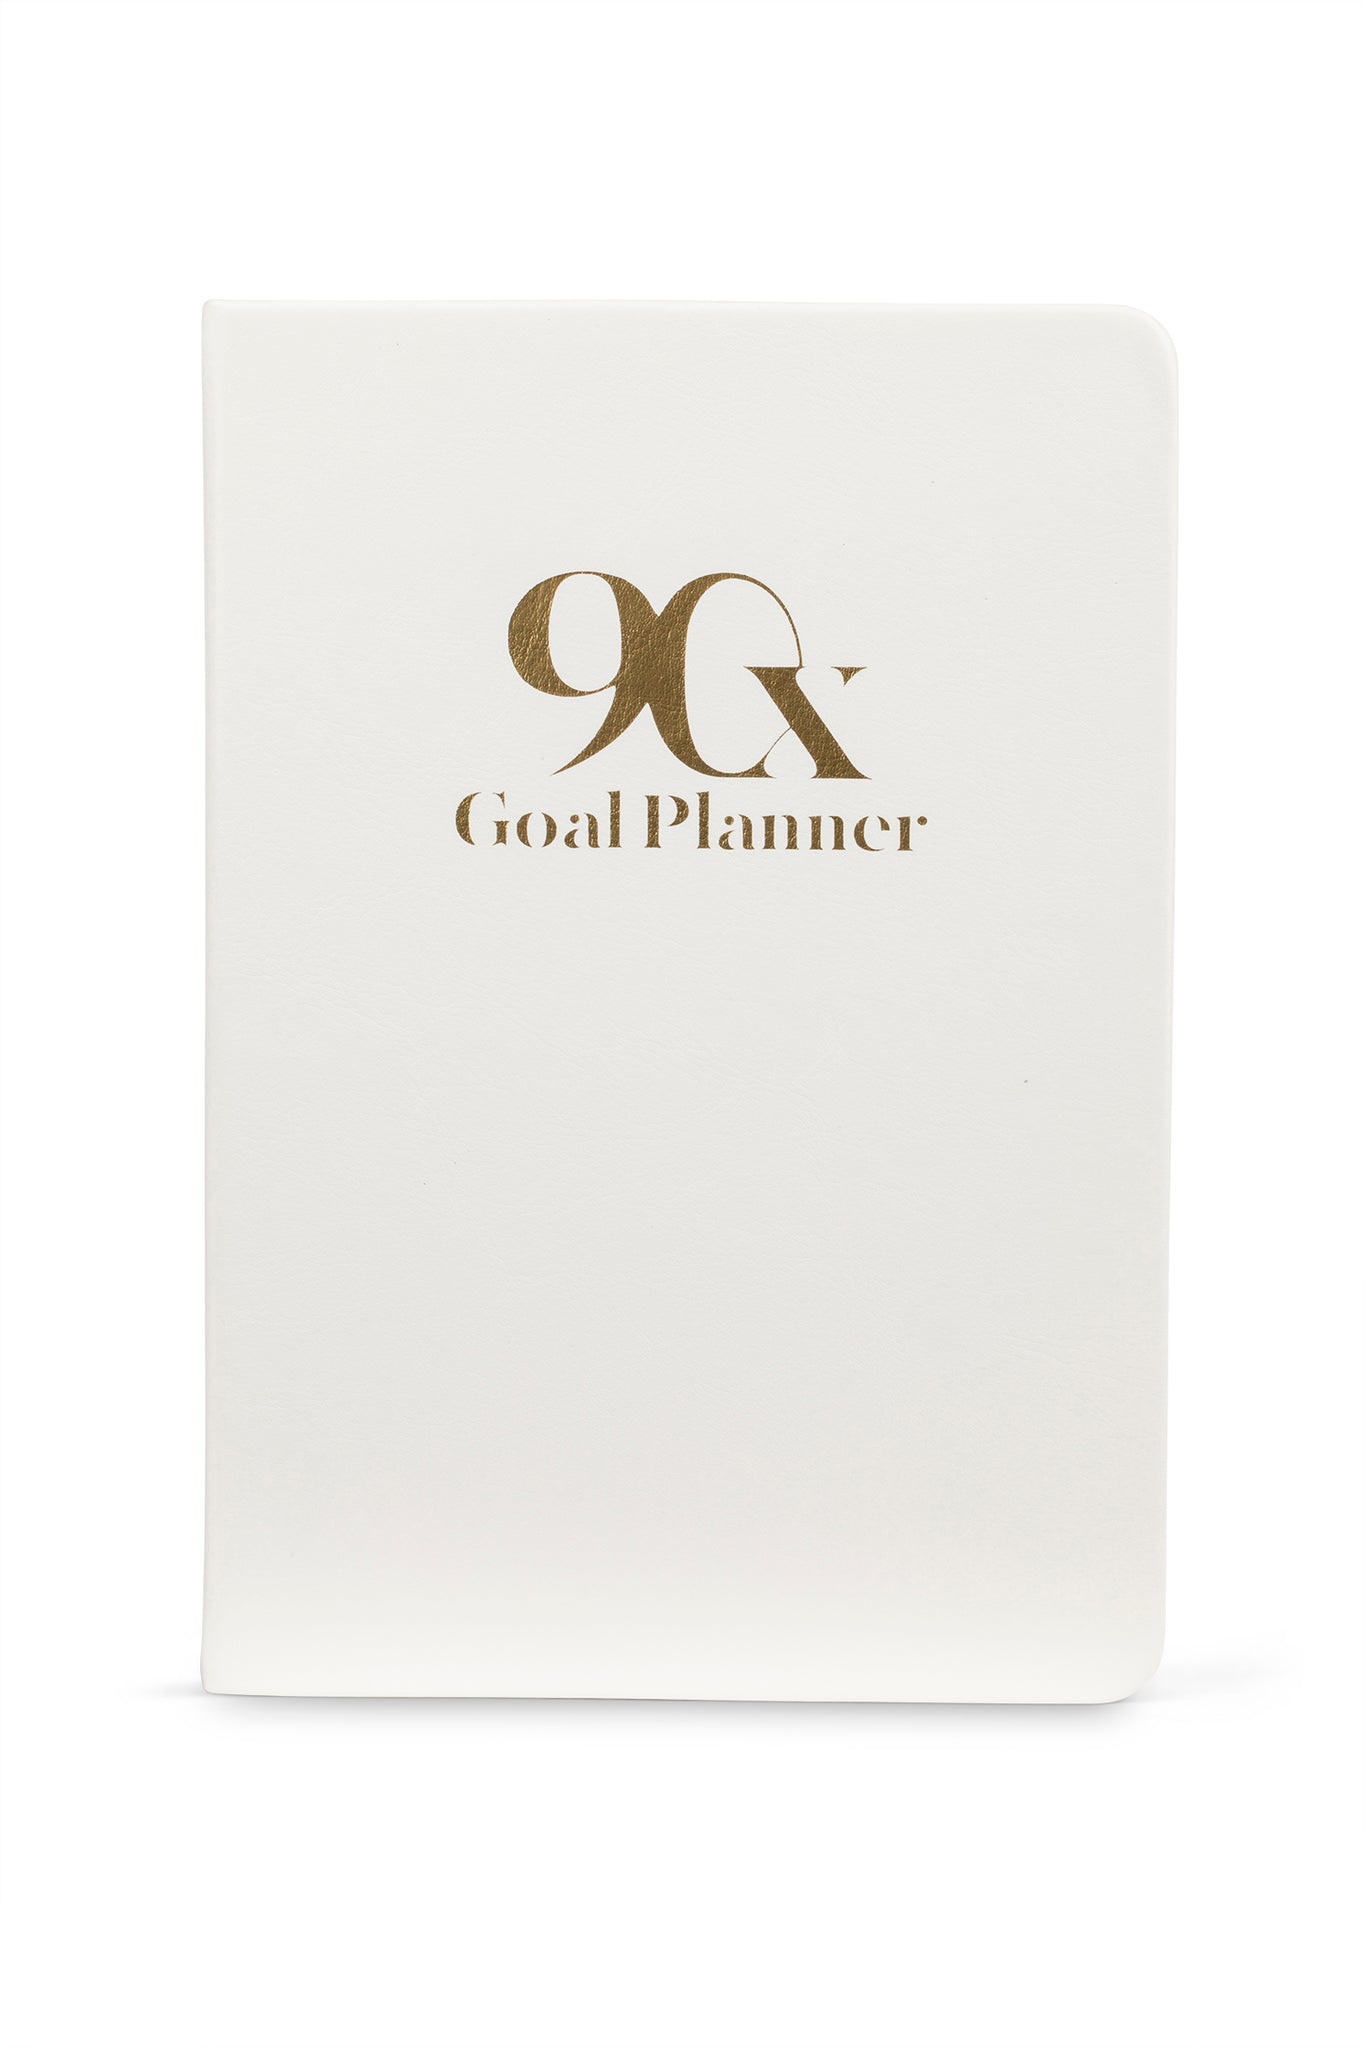 90X Goal Planner White